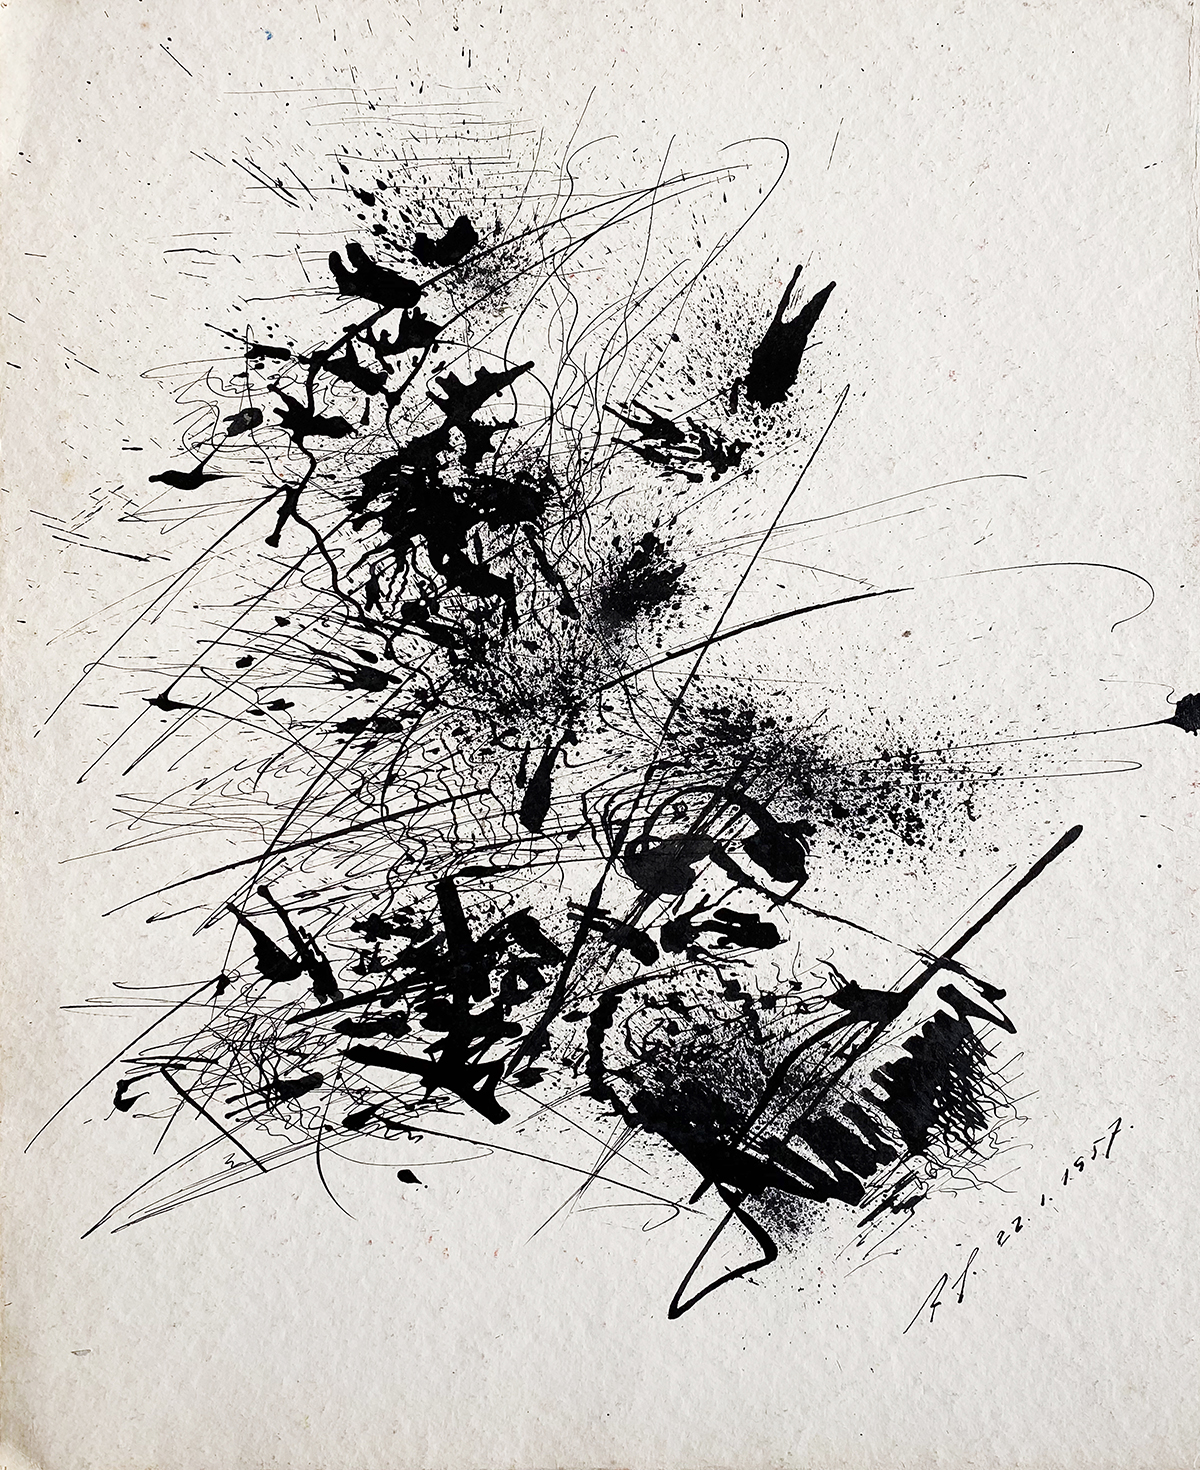 Rolf Retz-Schmidt, Ohne Titel, 1957, Federzeichnung auf Papier, 39,5 x 32,1 cm